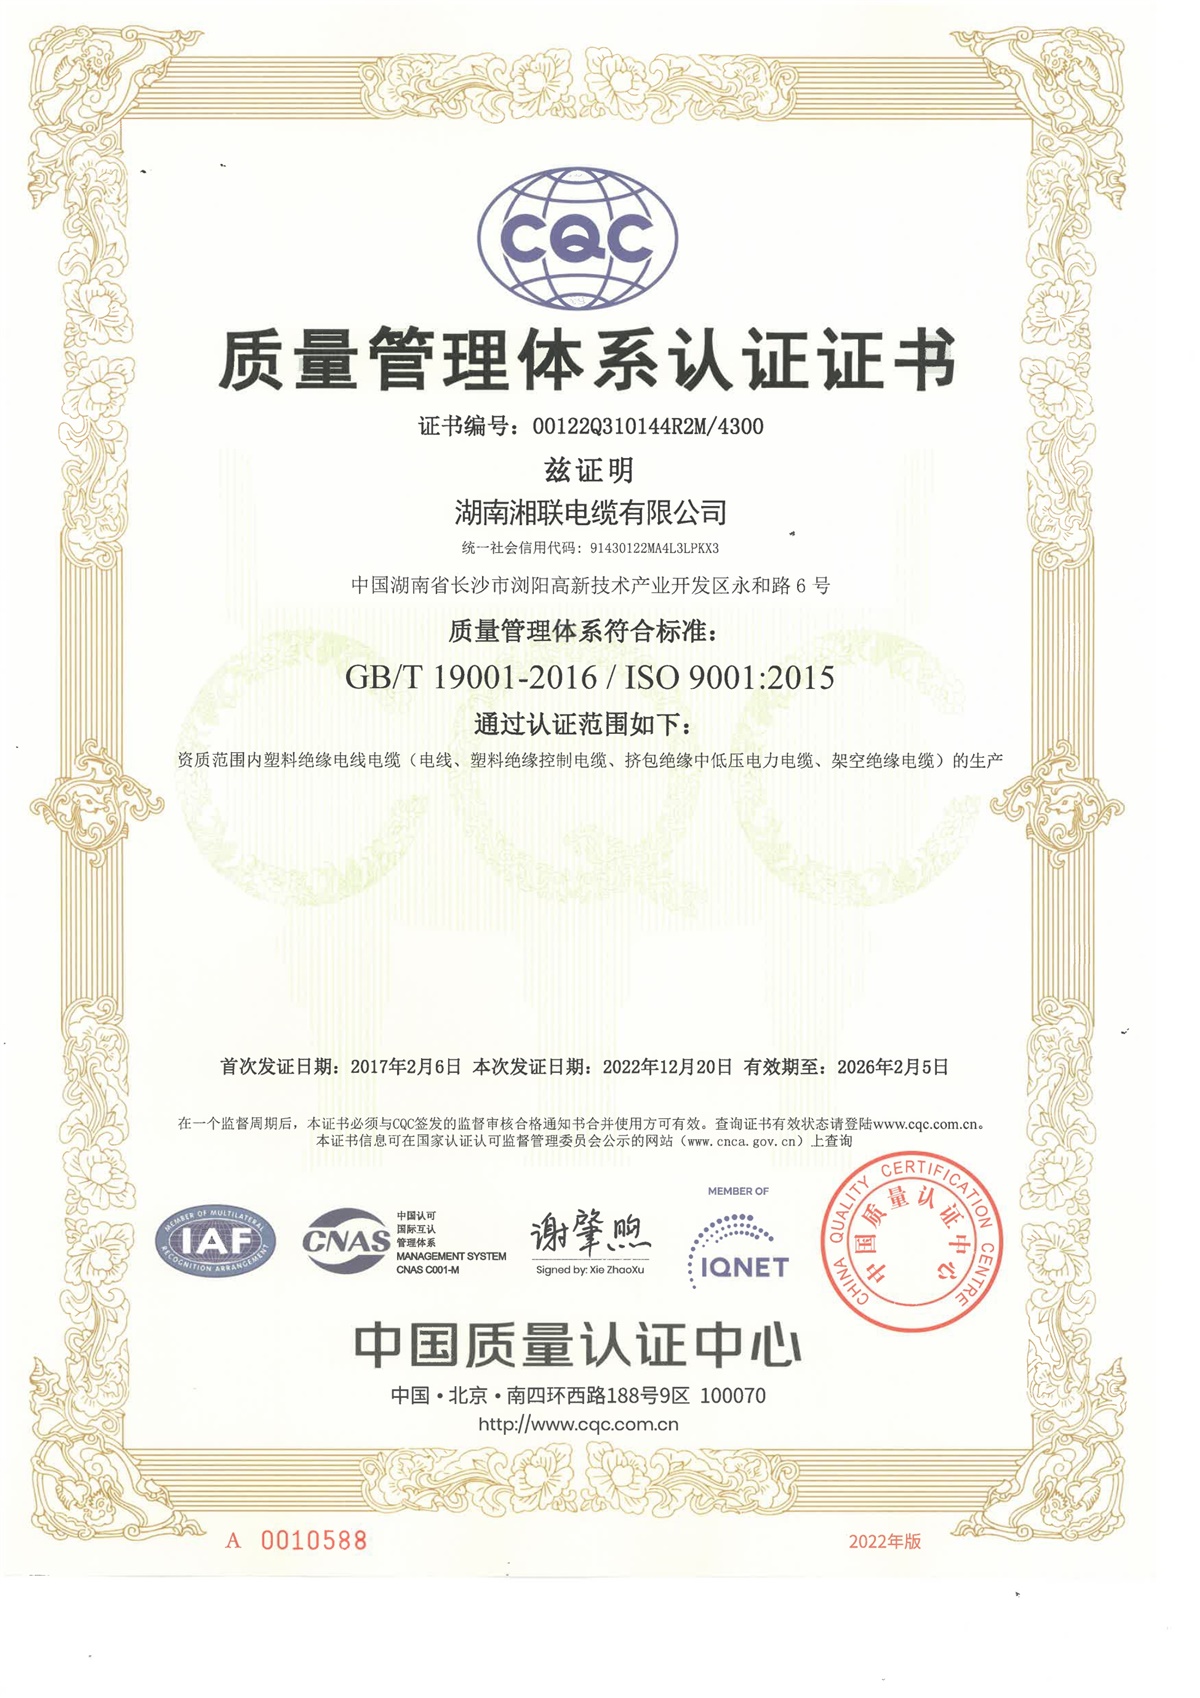 ISO:9001质量管理体系认证证书